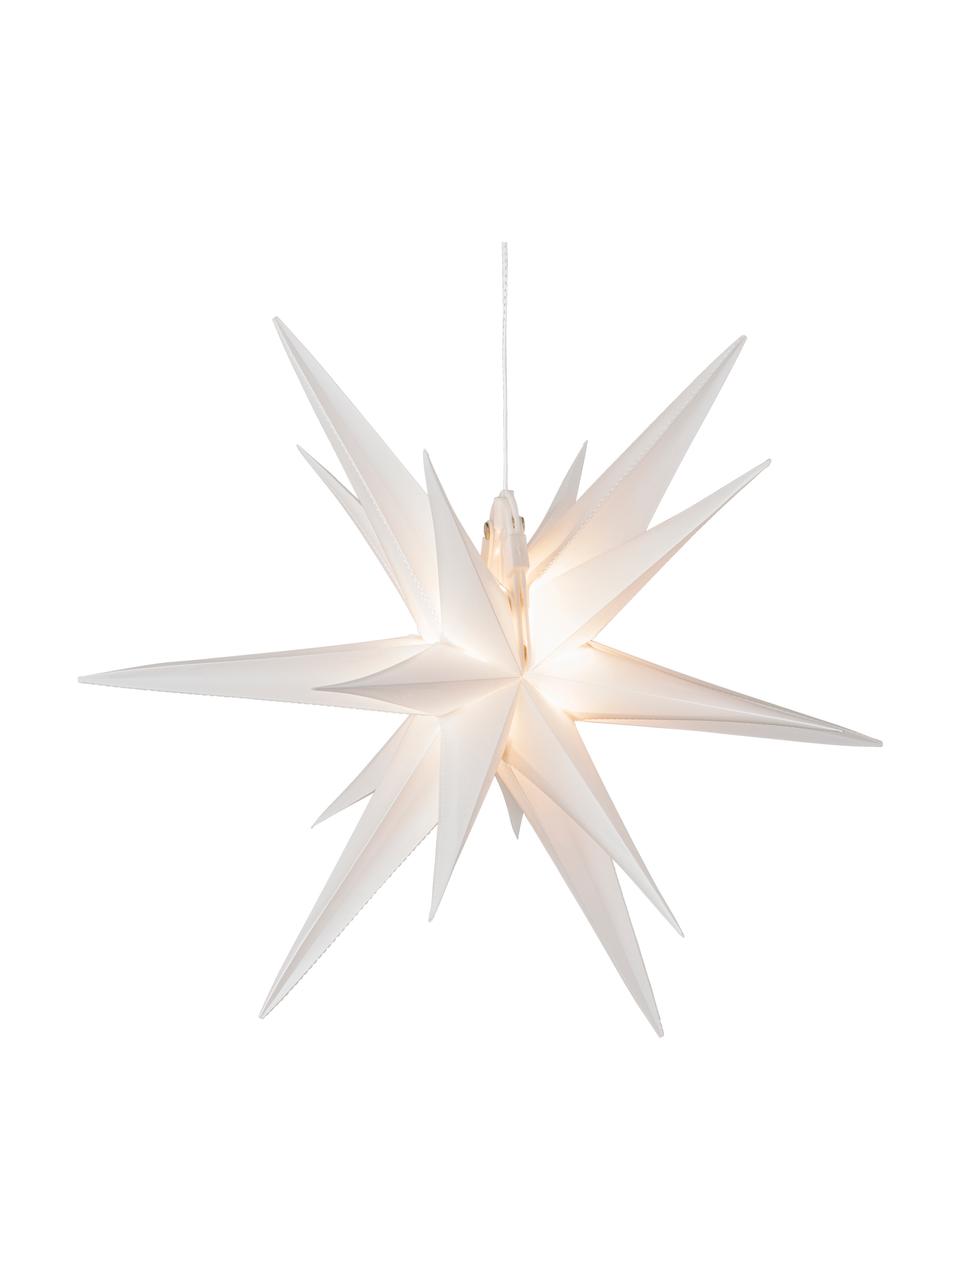 Dekoracja świetlna LED w kształcie gwiazdy Zing, Tworzywo sztuczne, Biały, S 40 x W 40 cm